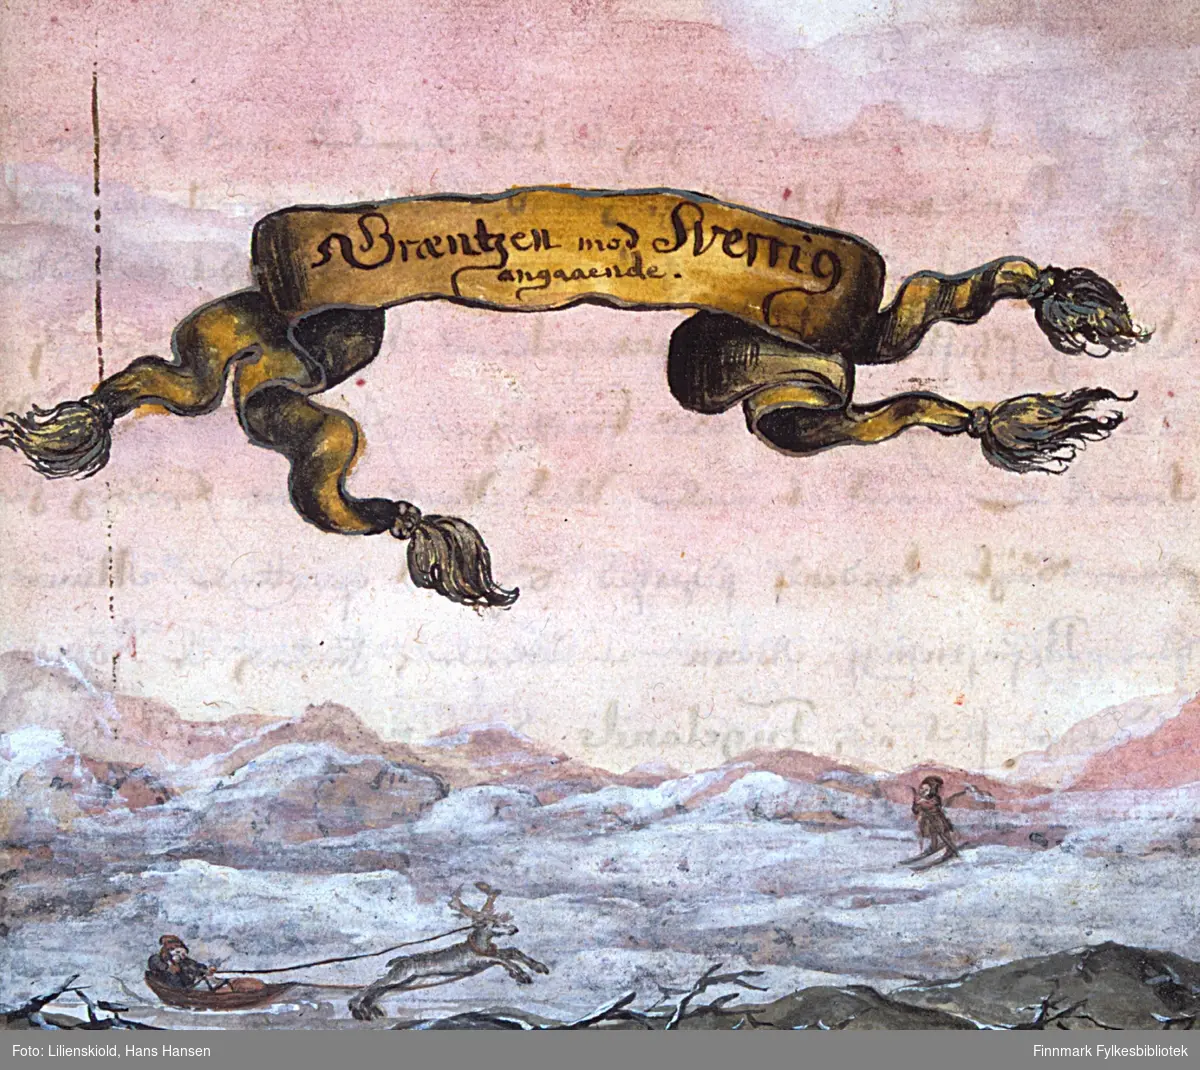 Græntzen mod Sverrig angaaende. Vinterbilde som viser transport med rein og pulk, samt en skiløper. Innledningsillustrasjon til Cap. 4 i 2. binds første deling